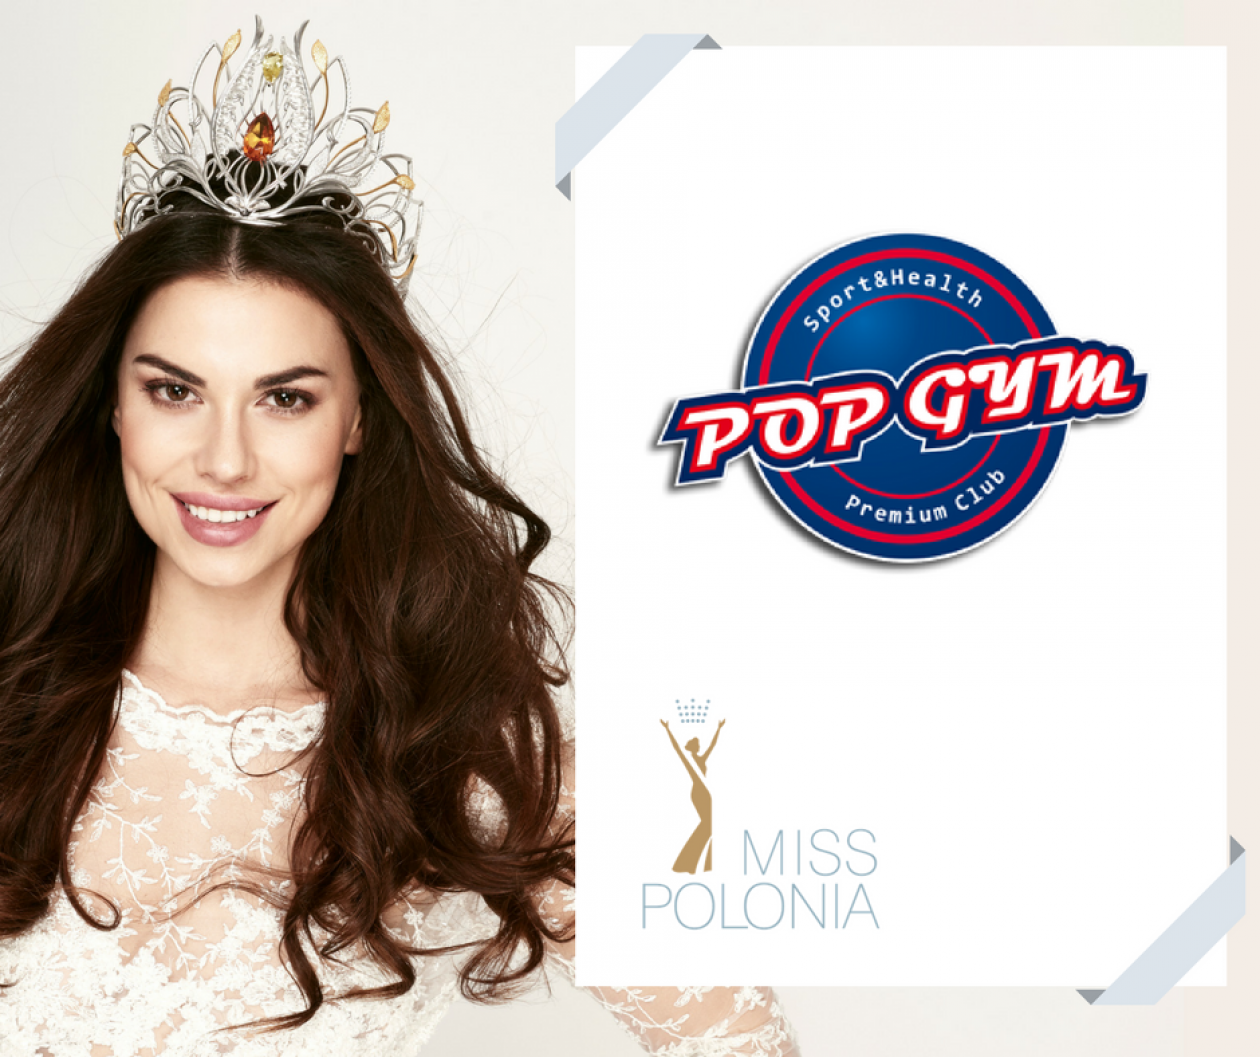 POP GYM partnerem konkursu Miss Polonia!